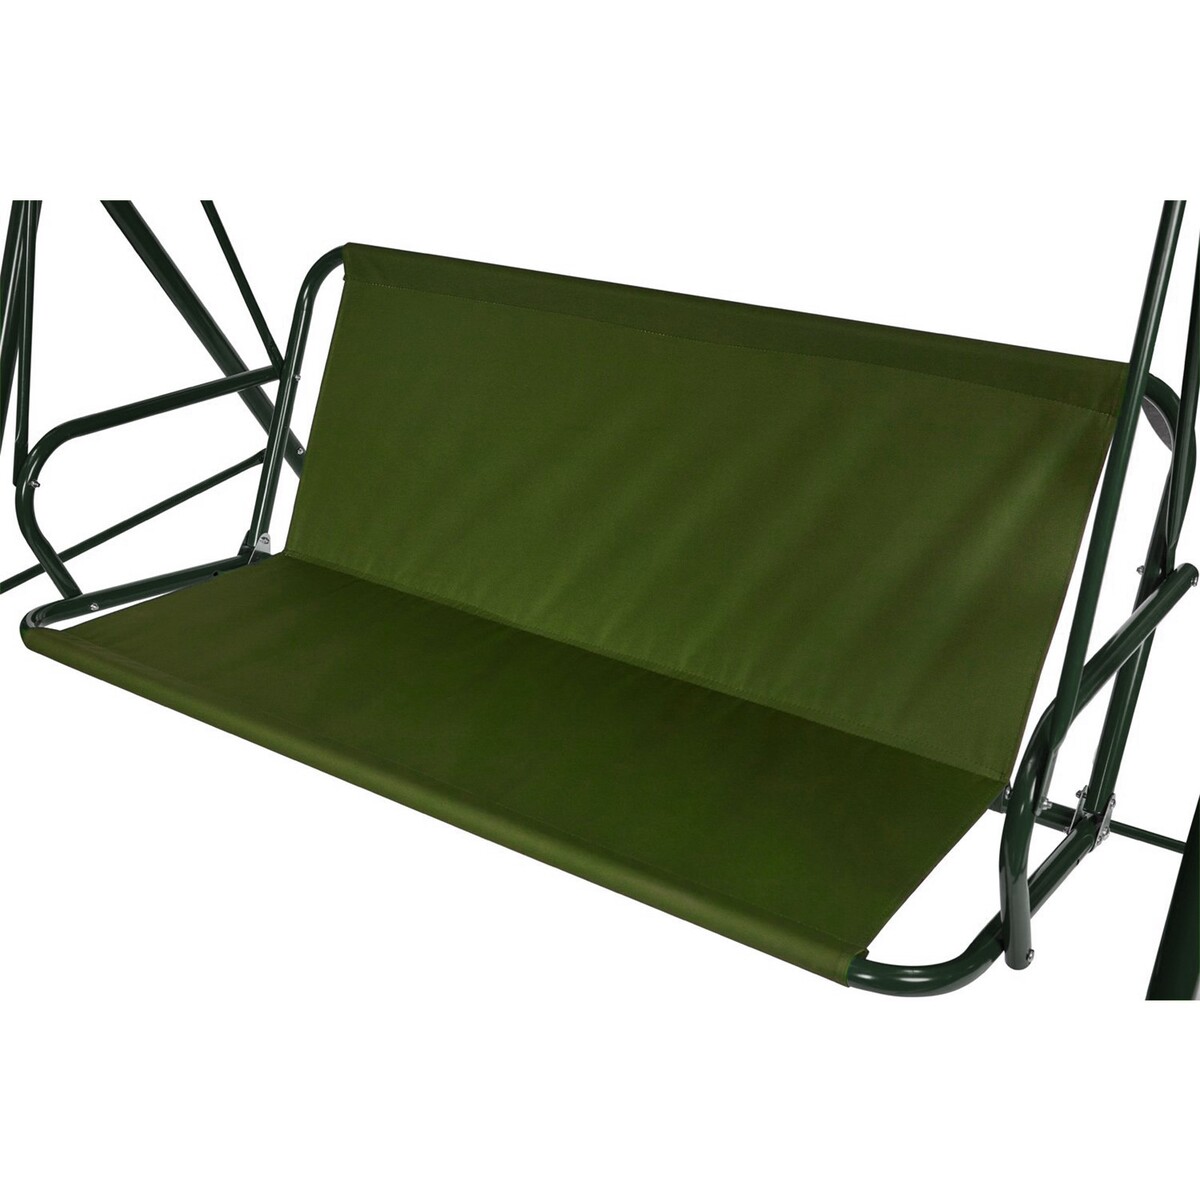 Усиленное тканевое сиденье для садовых качелей 120x50/44 см, оксфорд 600, олива No brand, цвет зеленый 02852696 - фото 1